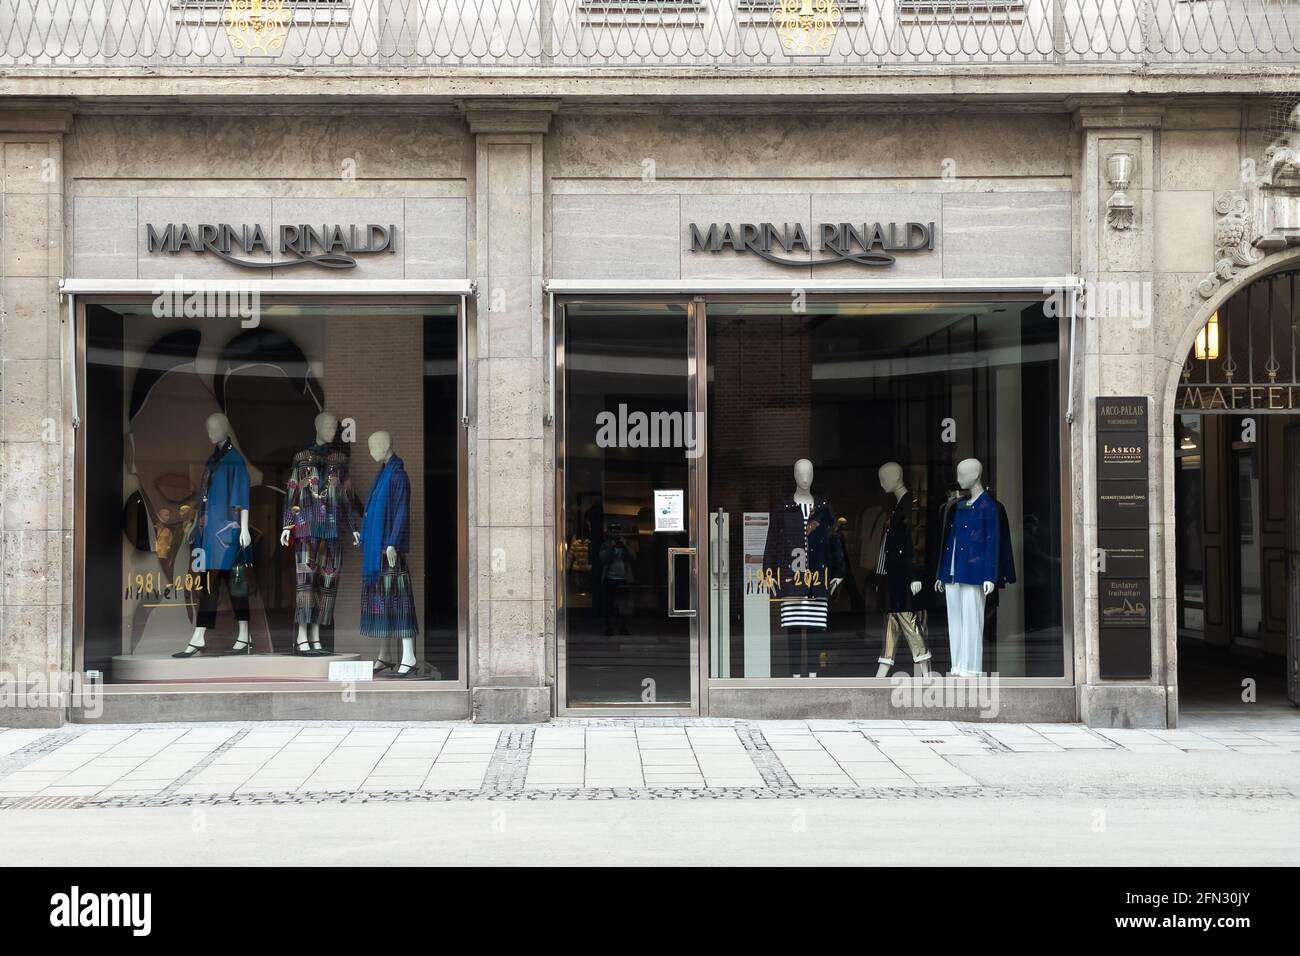 Marina Rinaldi fashion store in Munich Stock Photo - Alamy